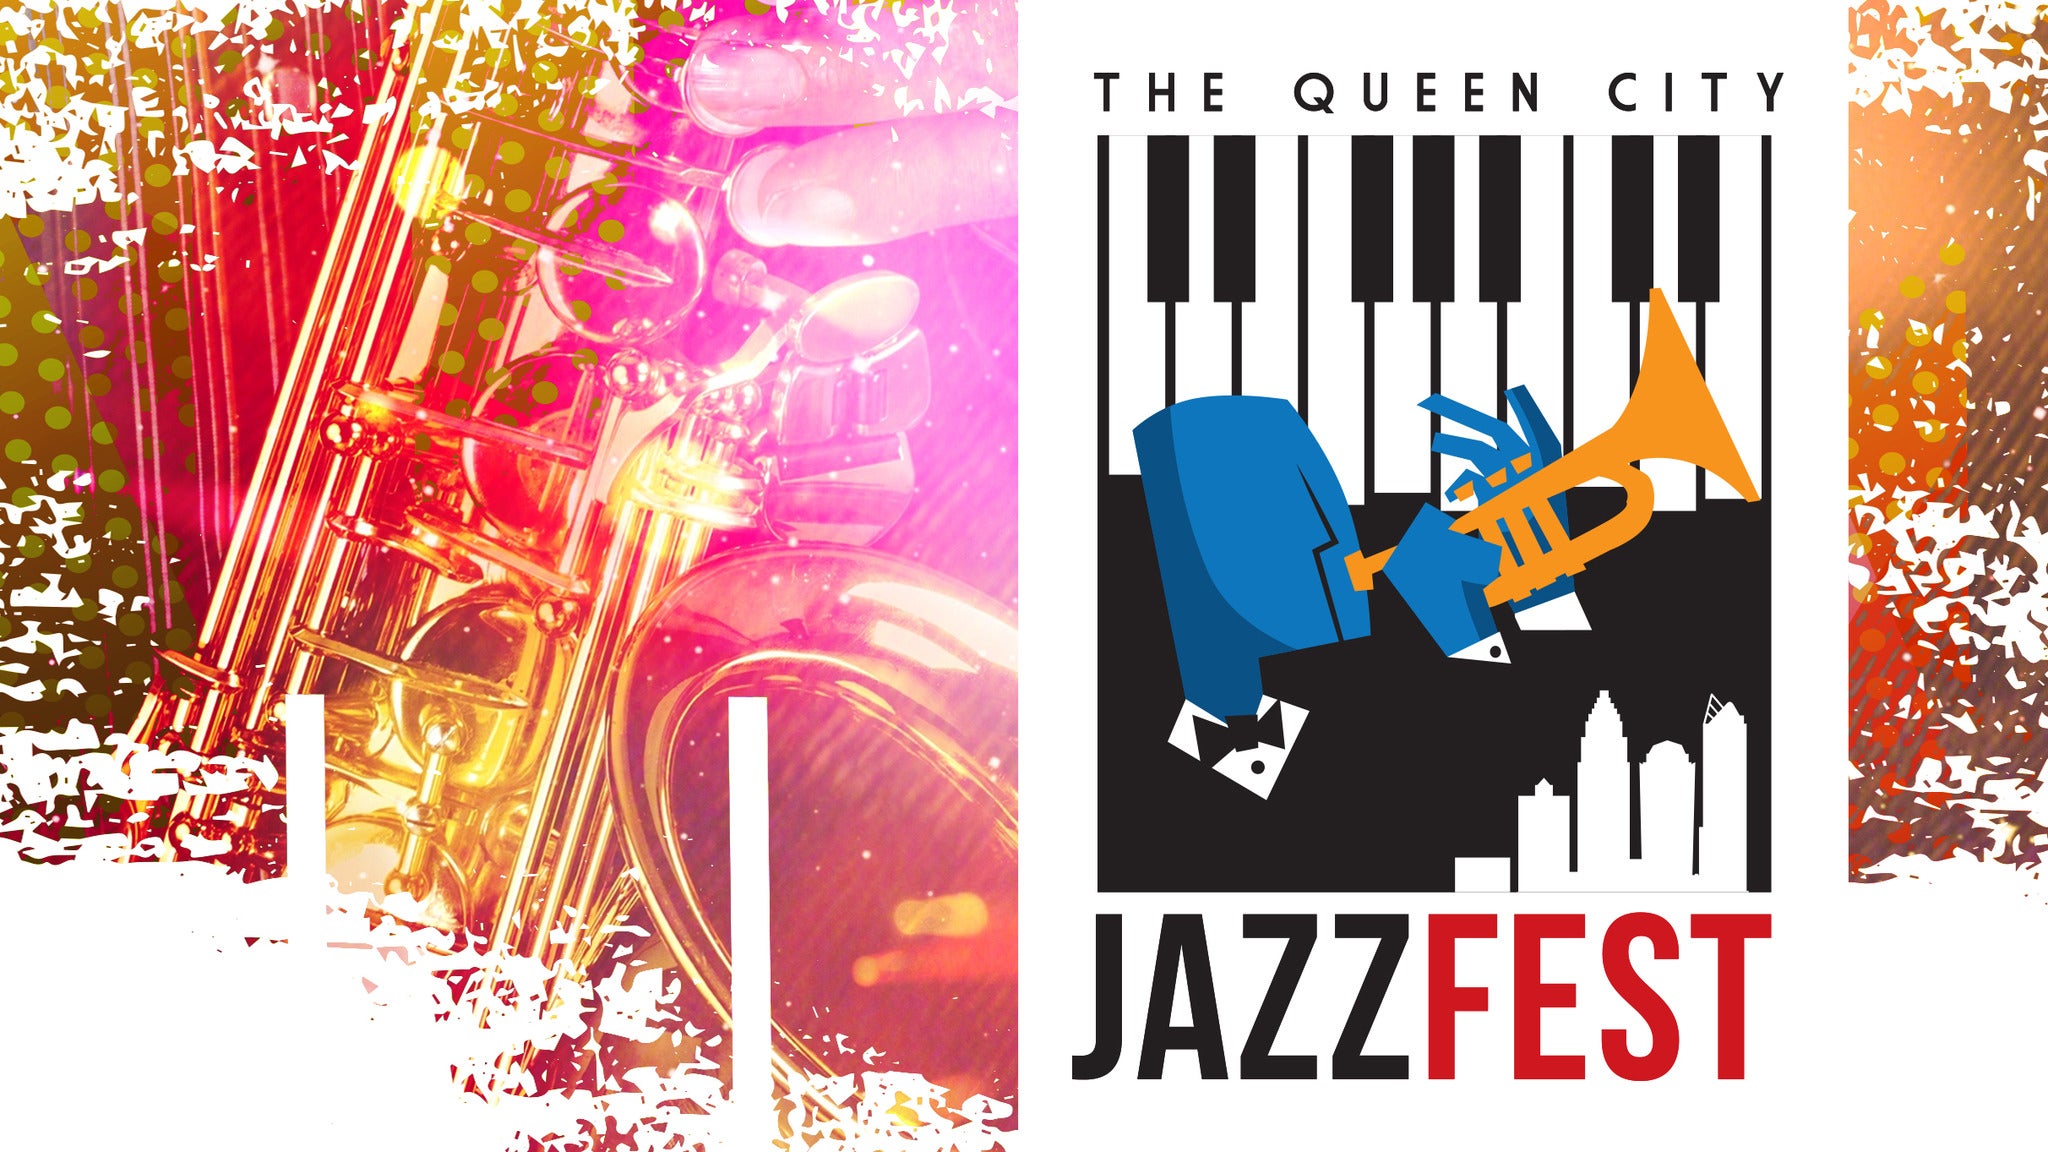 Queen City Jazz Festival presale information on freepresalepasswords.com